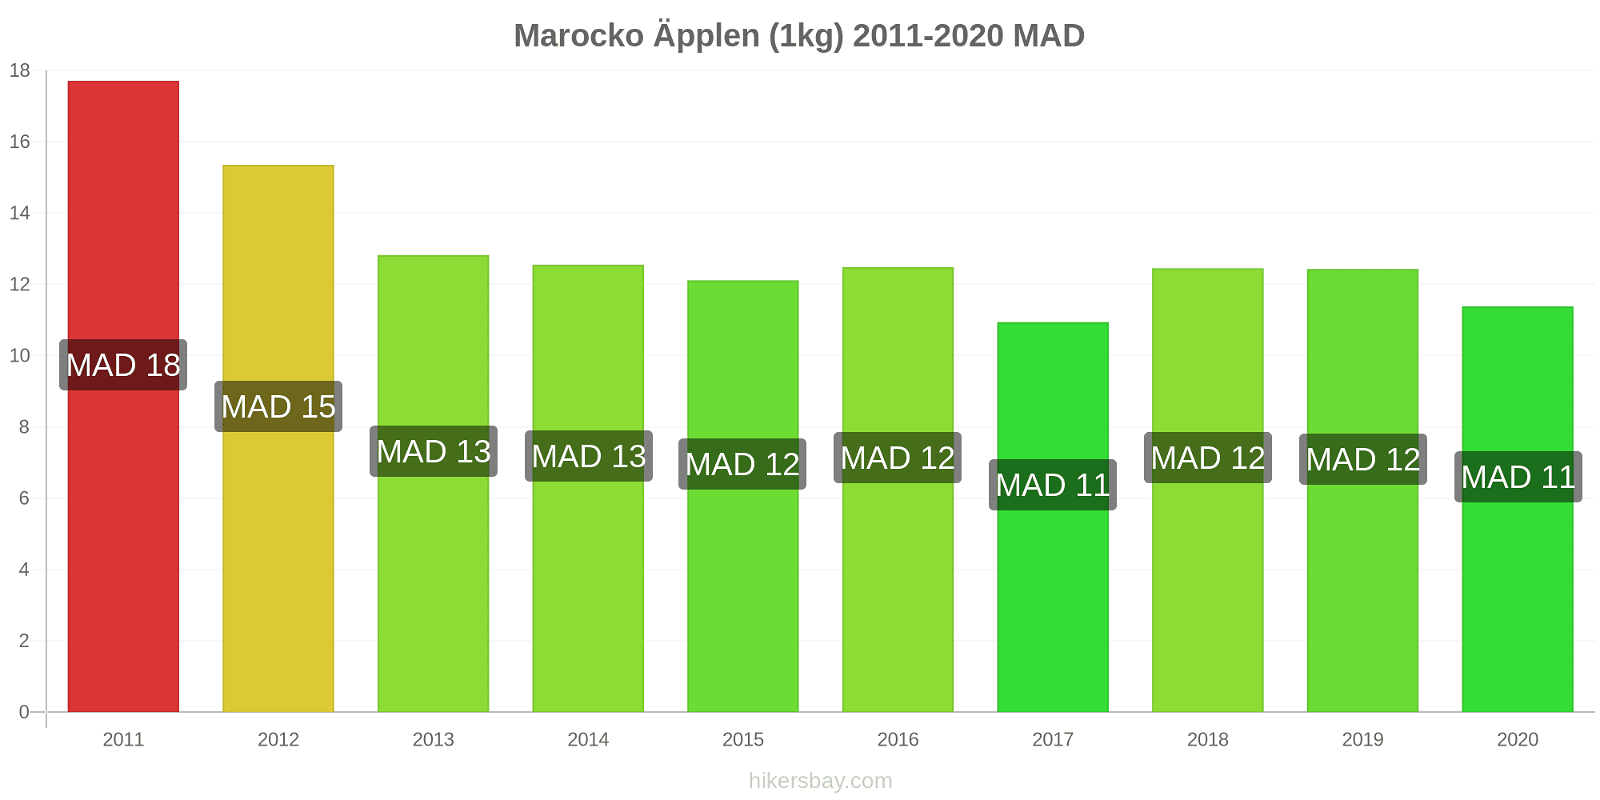 Marocko prisförändringar Äpplen (1kg) hikersbay.com